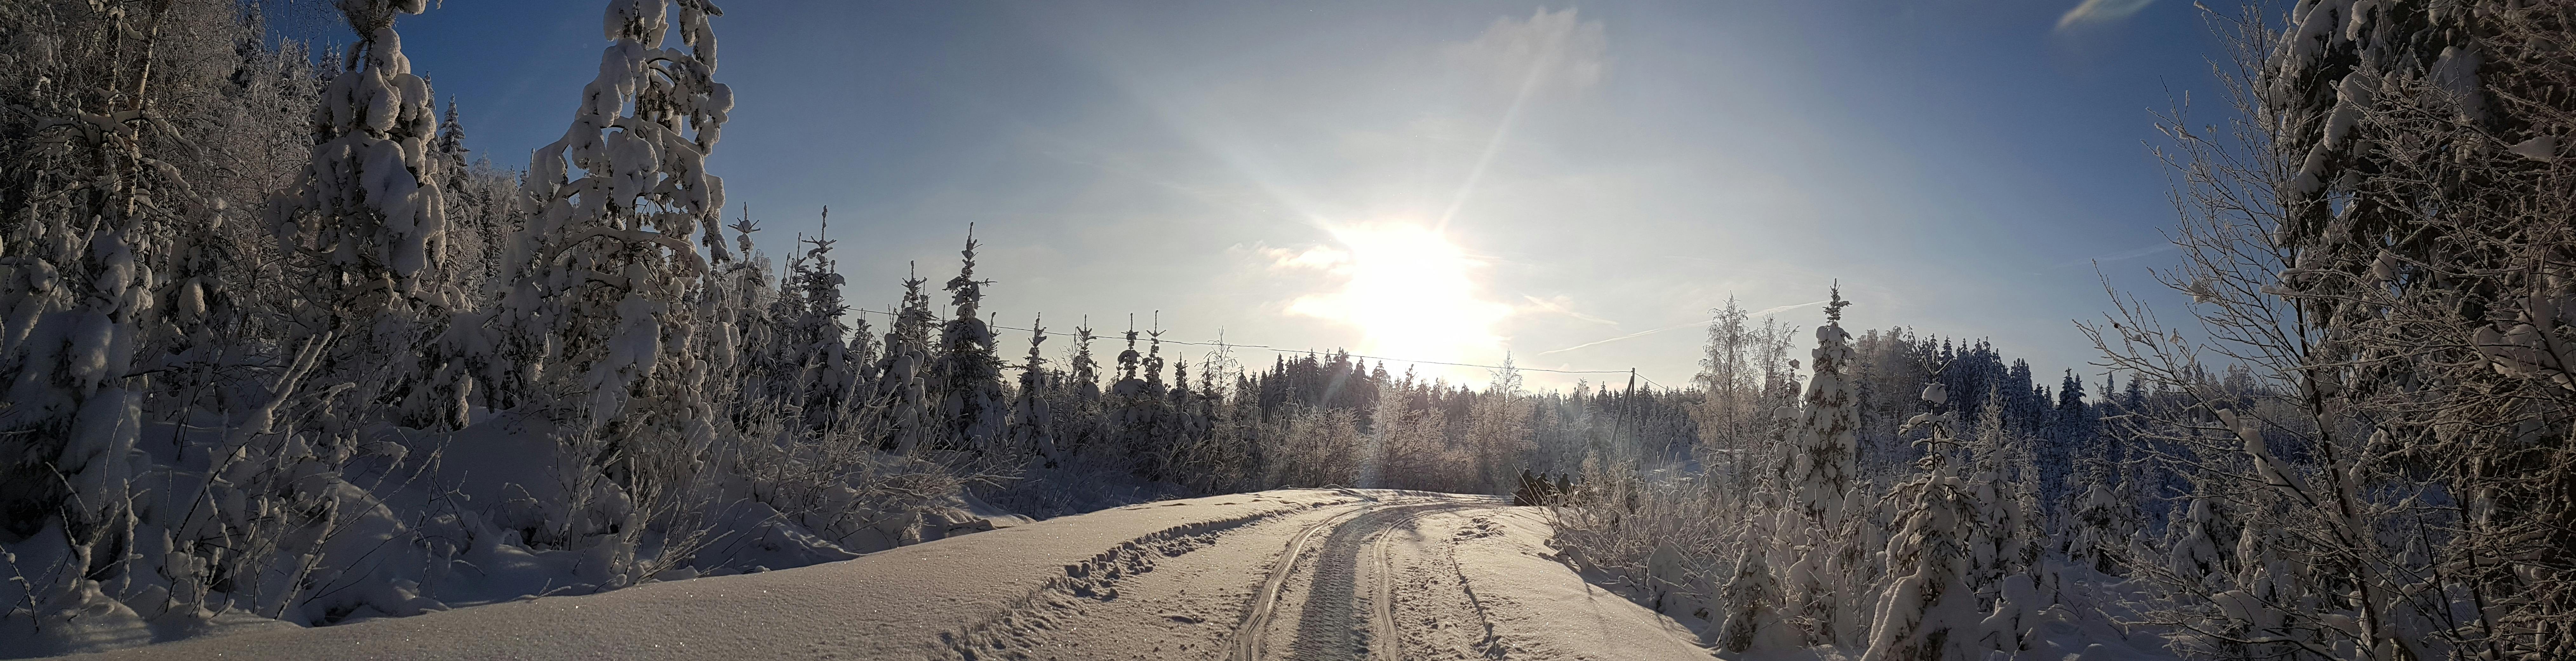 Vandring i finsk skov med snesko